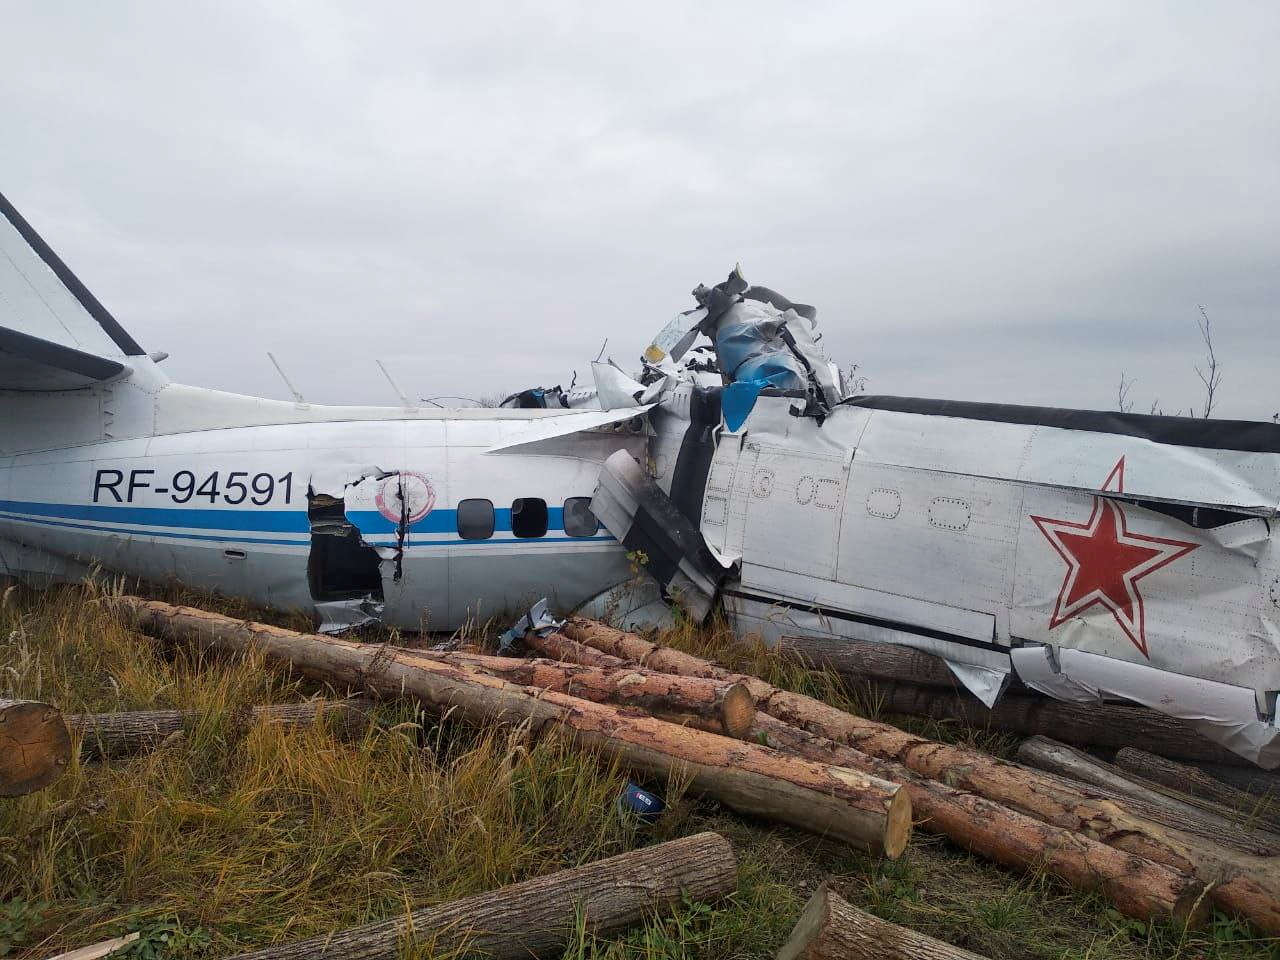 شوهد حطام الطائرة L-410 في موقع التحطم بالقرب من بلدة مينسيلينسك في جمهورية تتارستان ، روسيا ، 10 أكتوبر ، 2021. وزارة الطوارئ الروسية / منشور عبر رويترز 